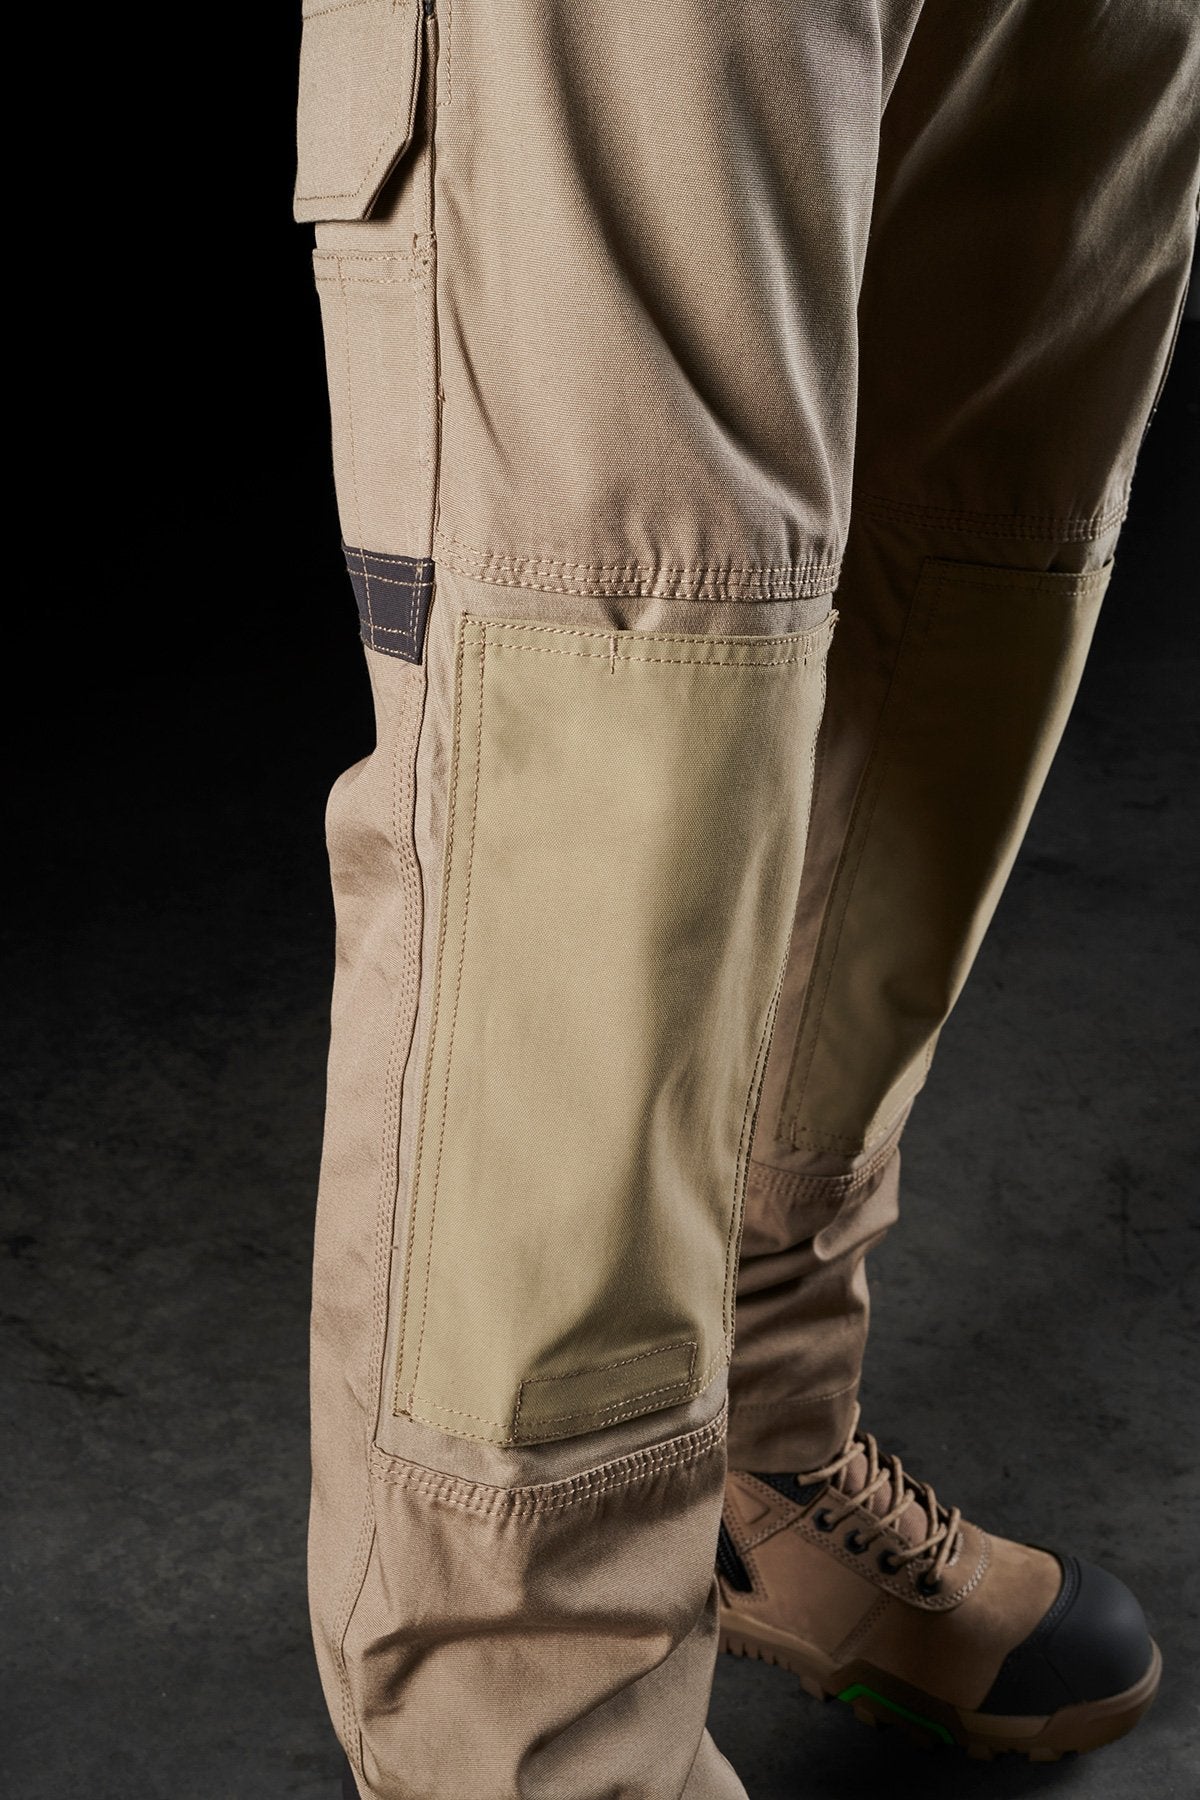 FXD WP-3W Ladies Stretch Work Pants (FX11906200). Khaki. Size 10